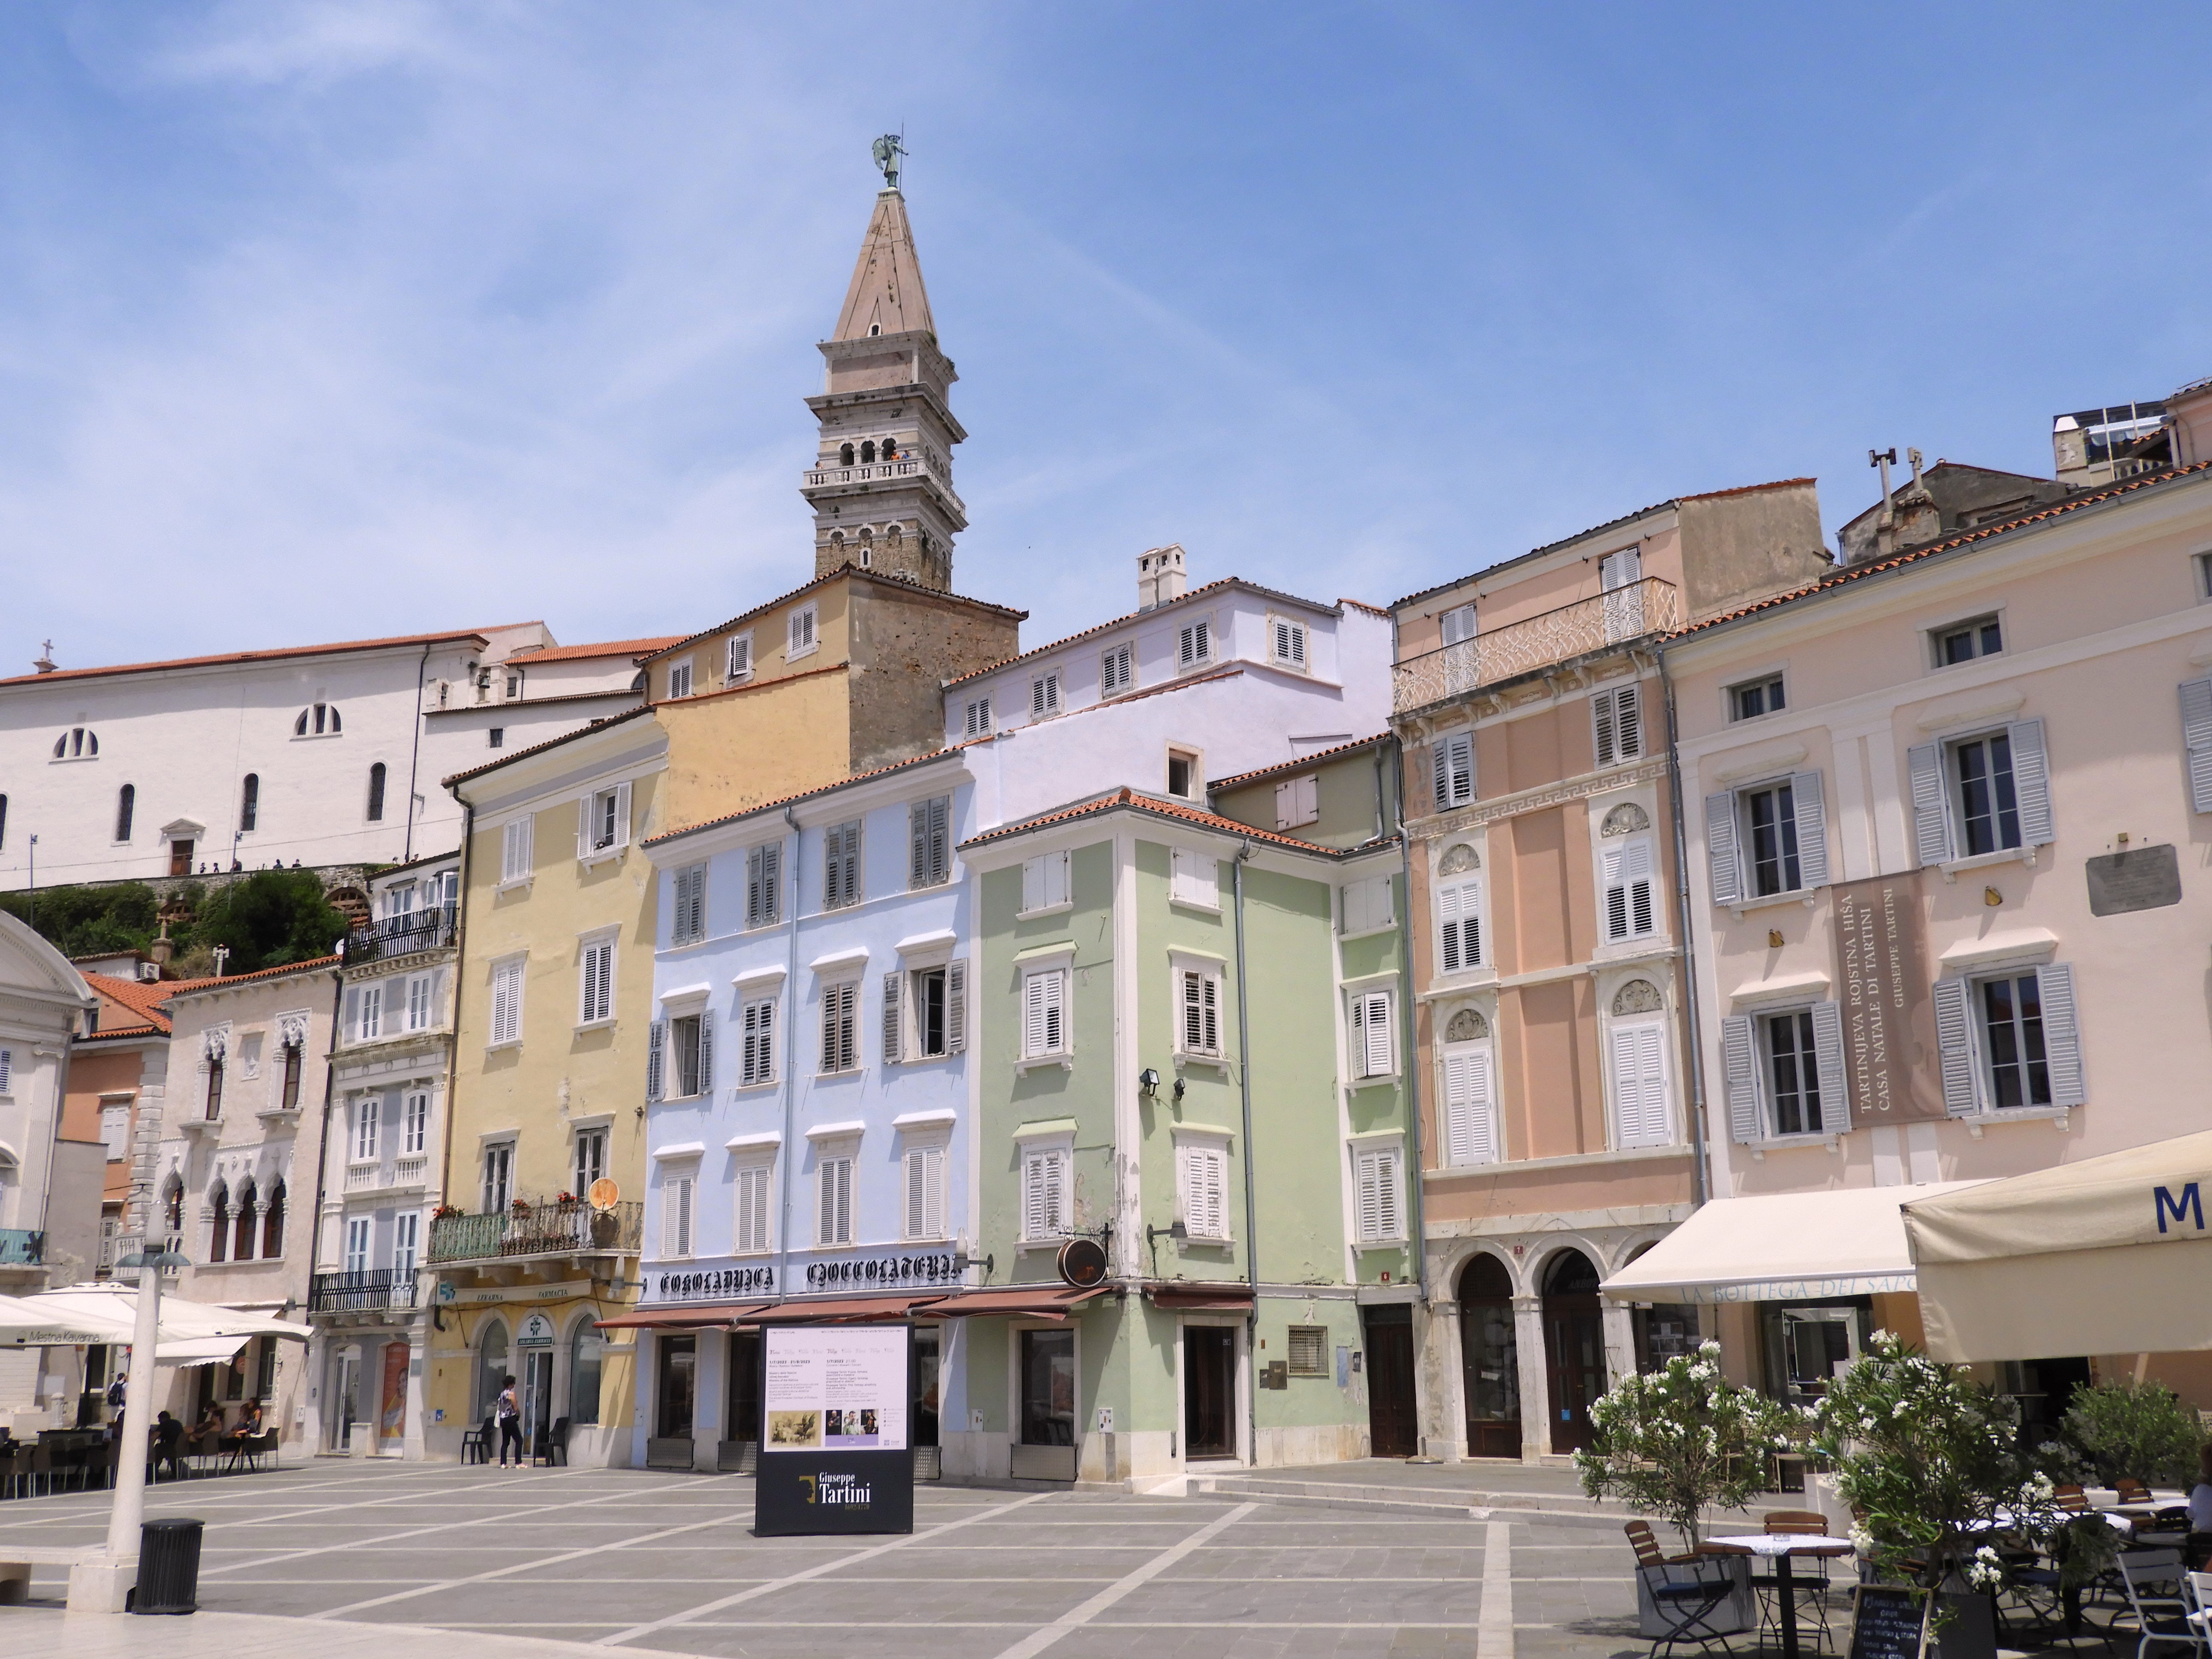 1224 - 17 - Piazza Tartini a Pirano - Slovenia